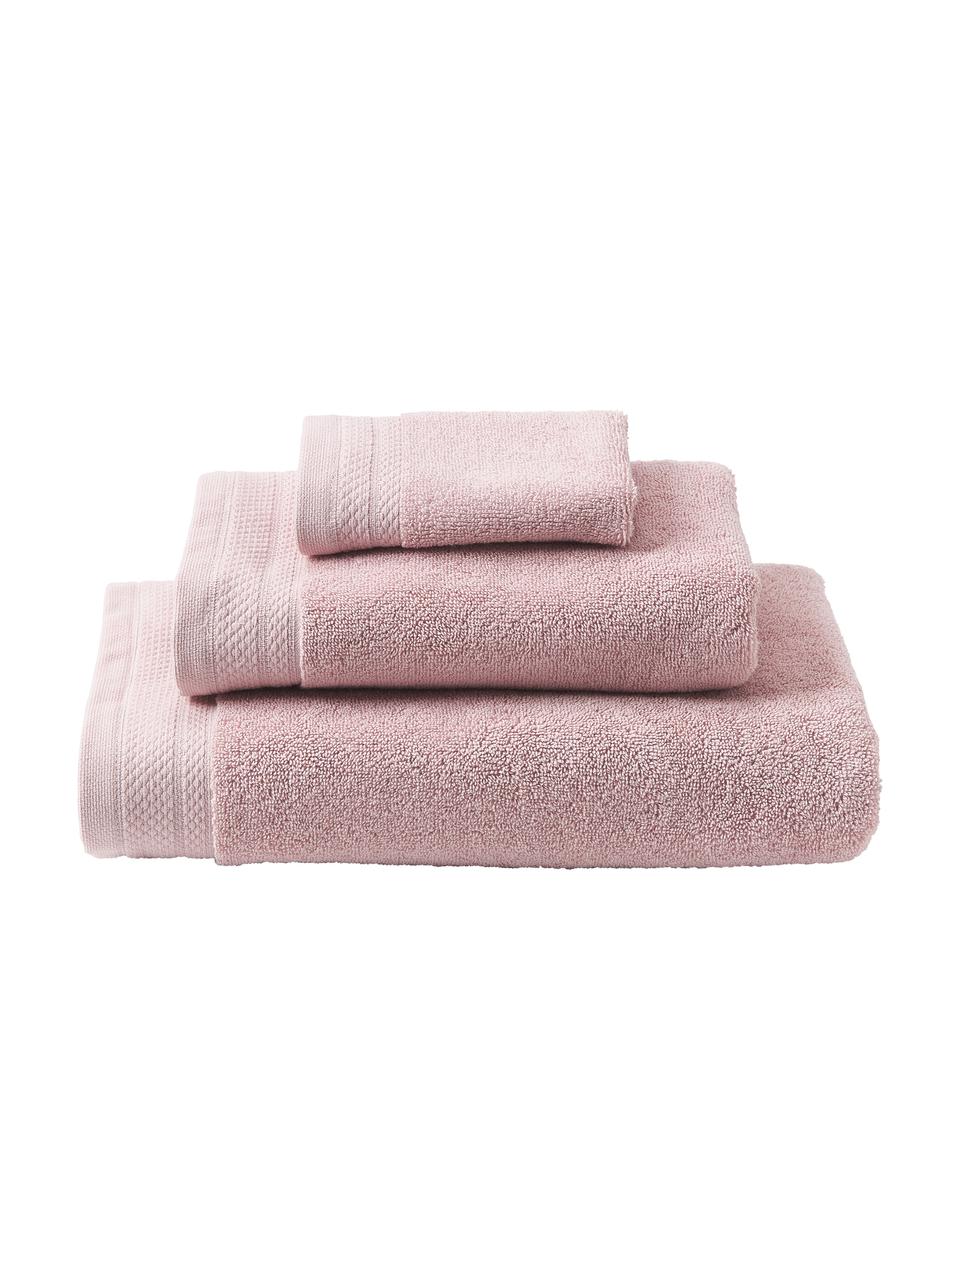 Lot de serviettes de bain coton bio Premium, 3 élém., 100 % coton bio certifié GOTS (par GCL International, GCL-300517)
Qualité supérieure 600 g/m², Vieux rose, Lot de différentes tailles